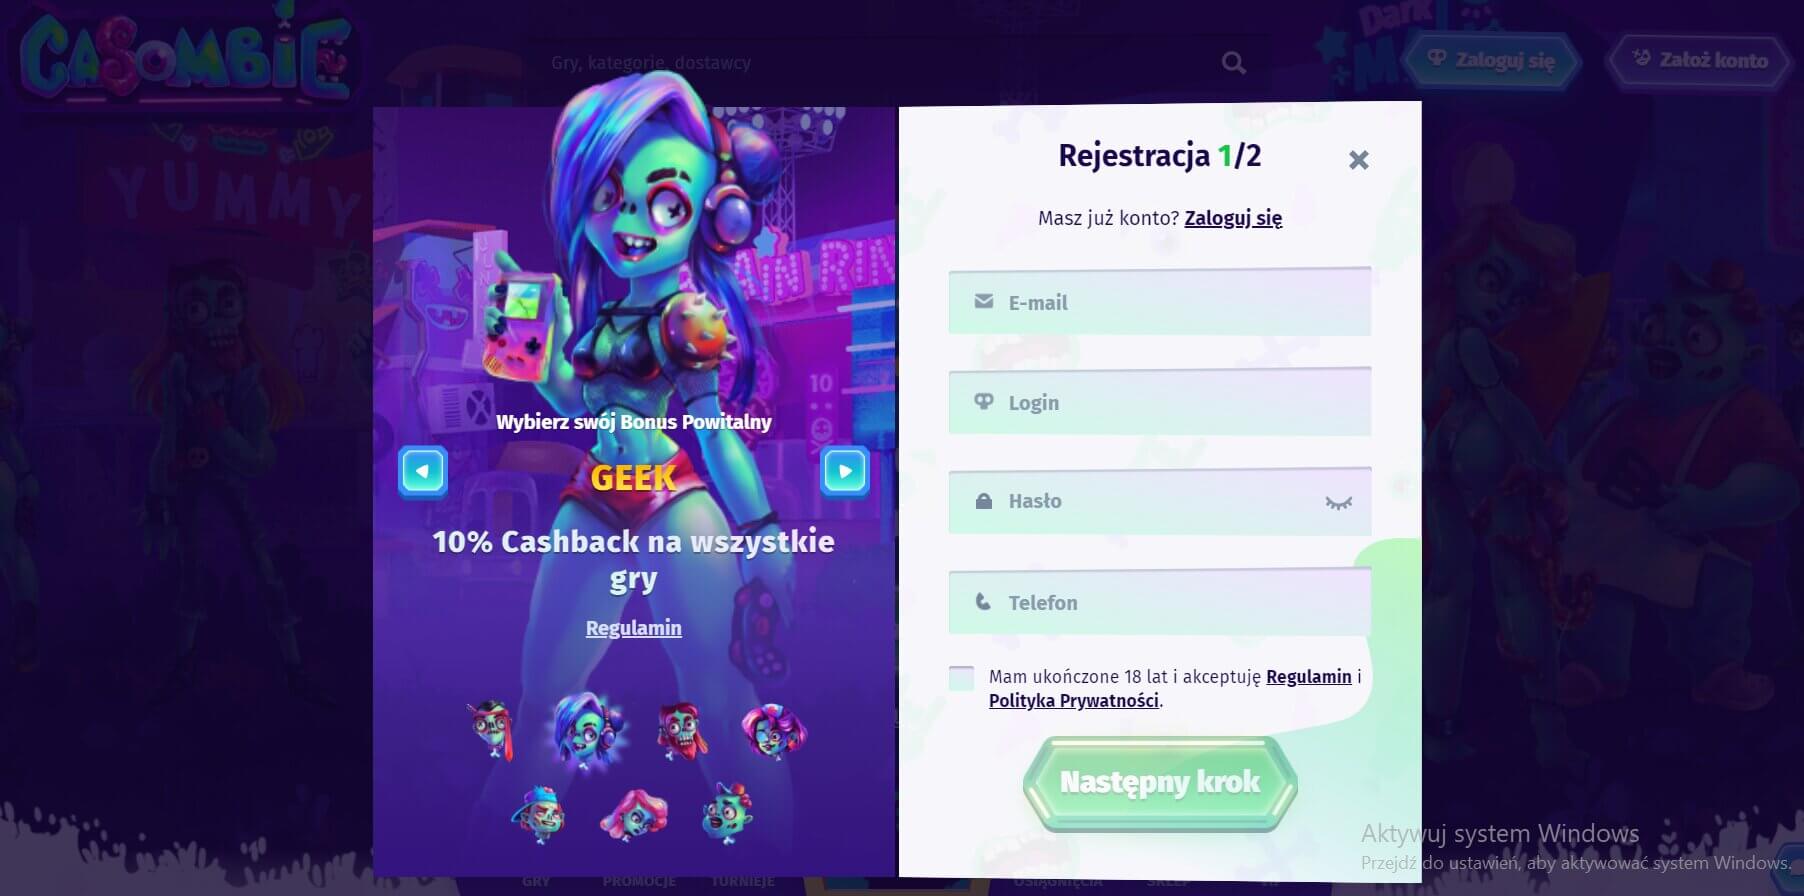 rejestracja w casino casombie screenshot